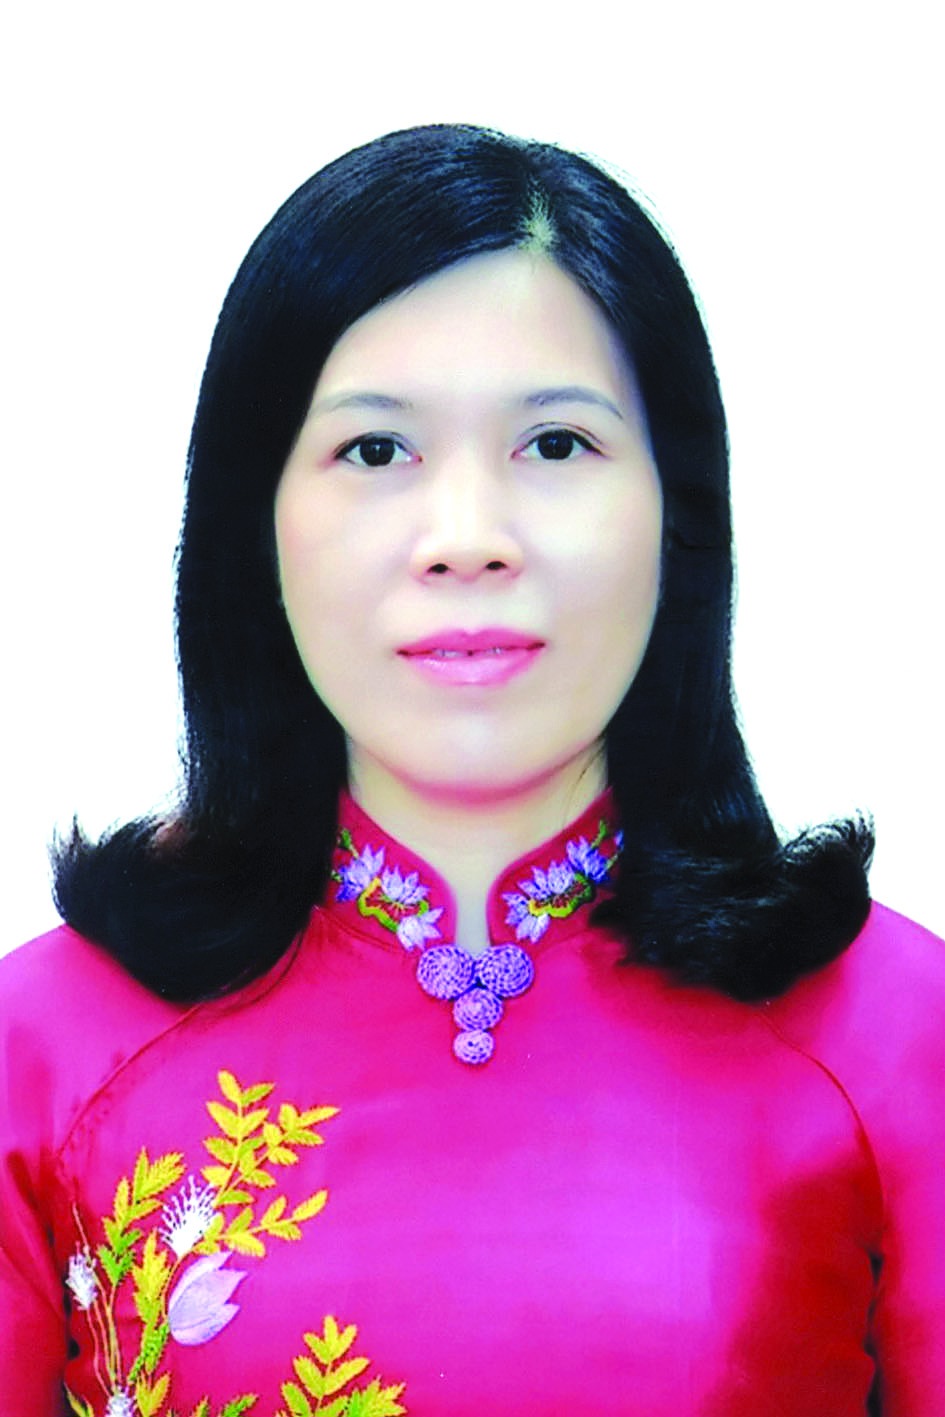 Chương trình hành động của Bí thư Quận ủy Cầu Giấy Trần Thị Phương Hoa, ứng cử viên đại biểu HĐND TP Hà Nội nhiệm kỳ 2021 - 2026 - Ảnh 1